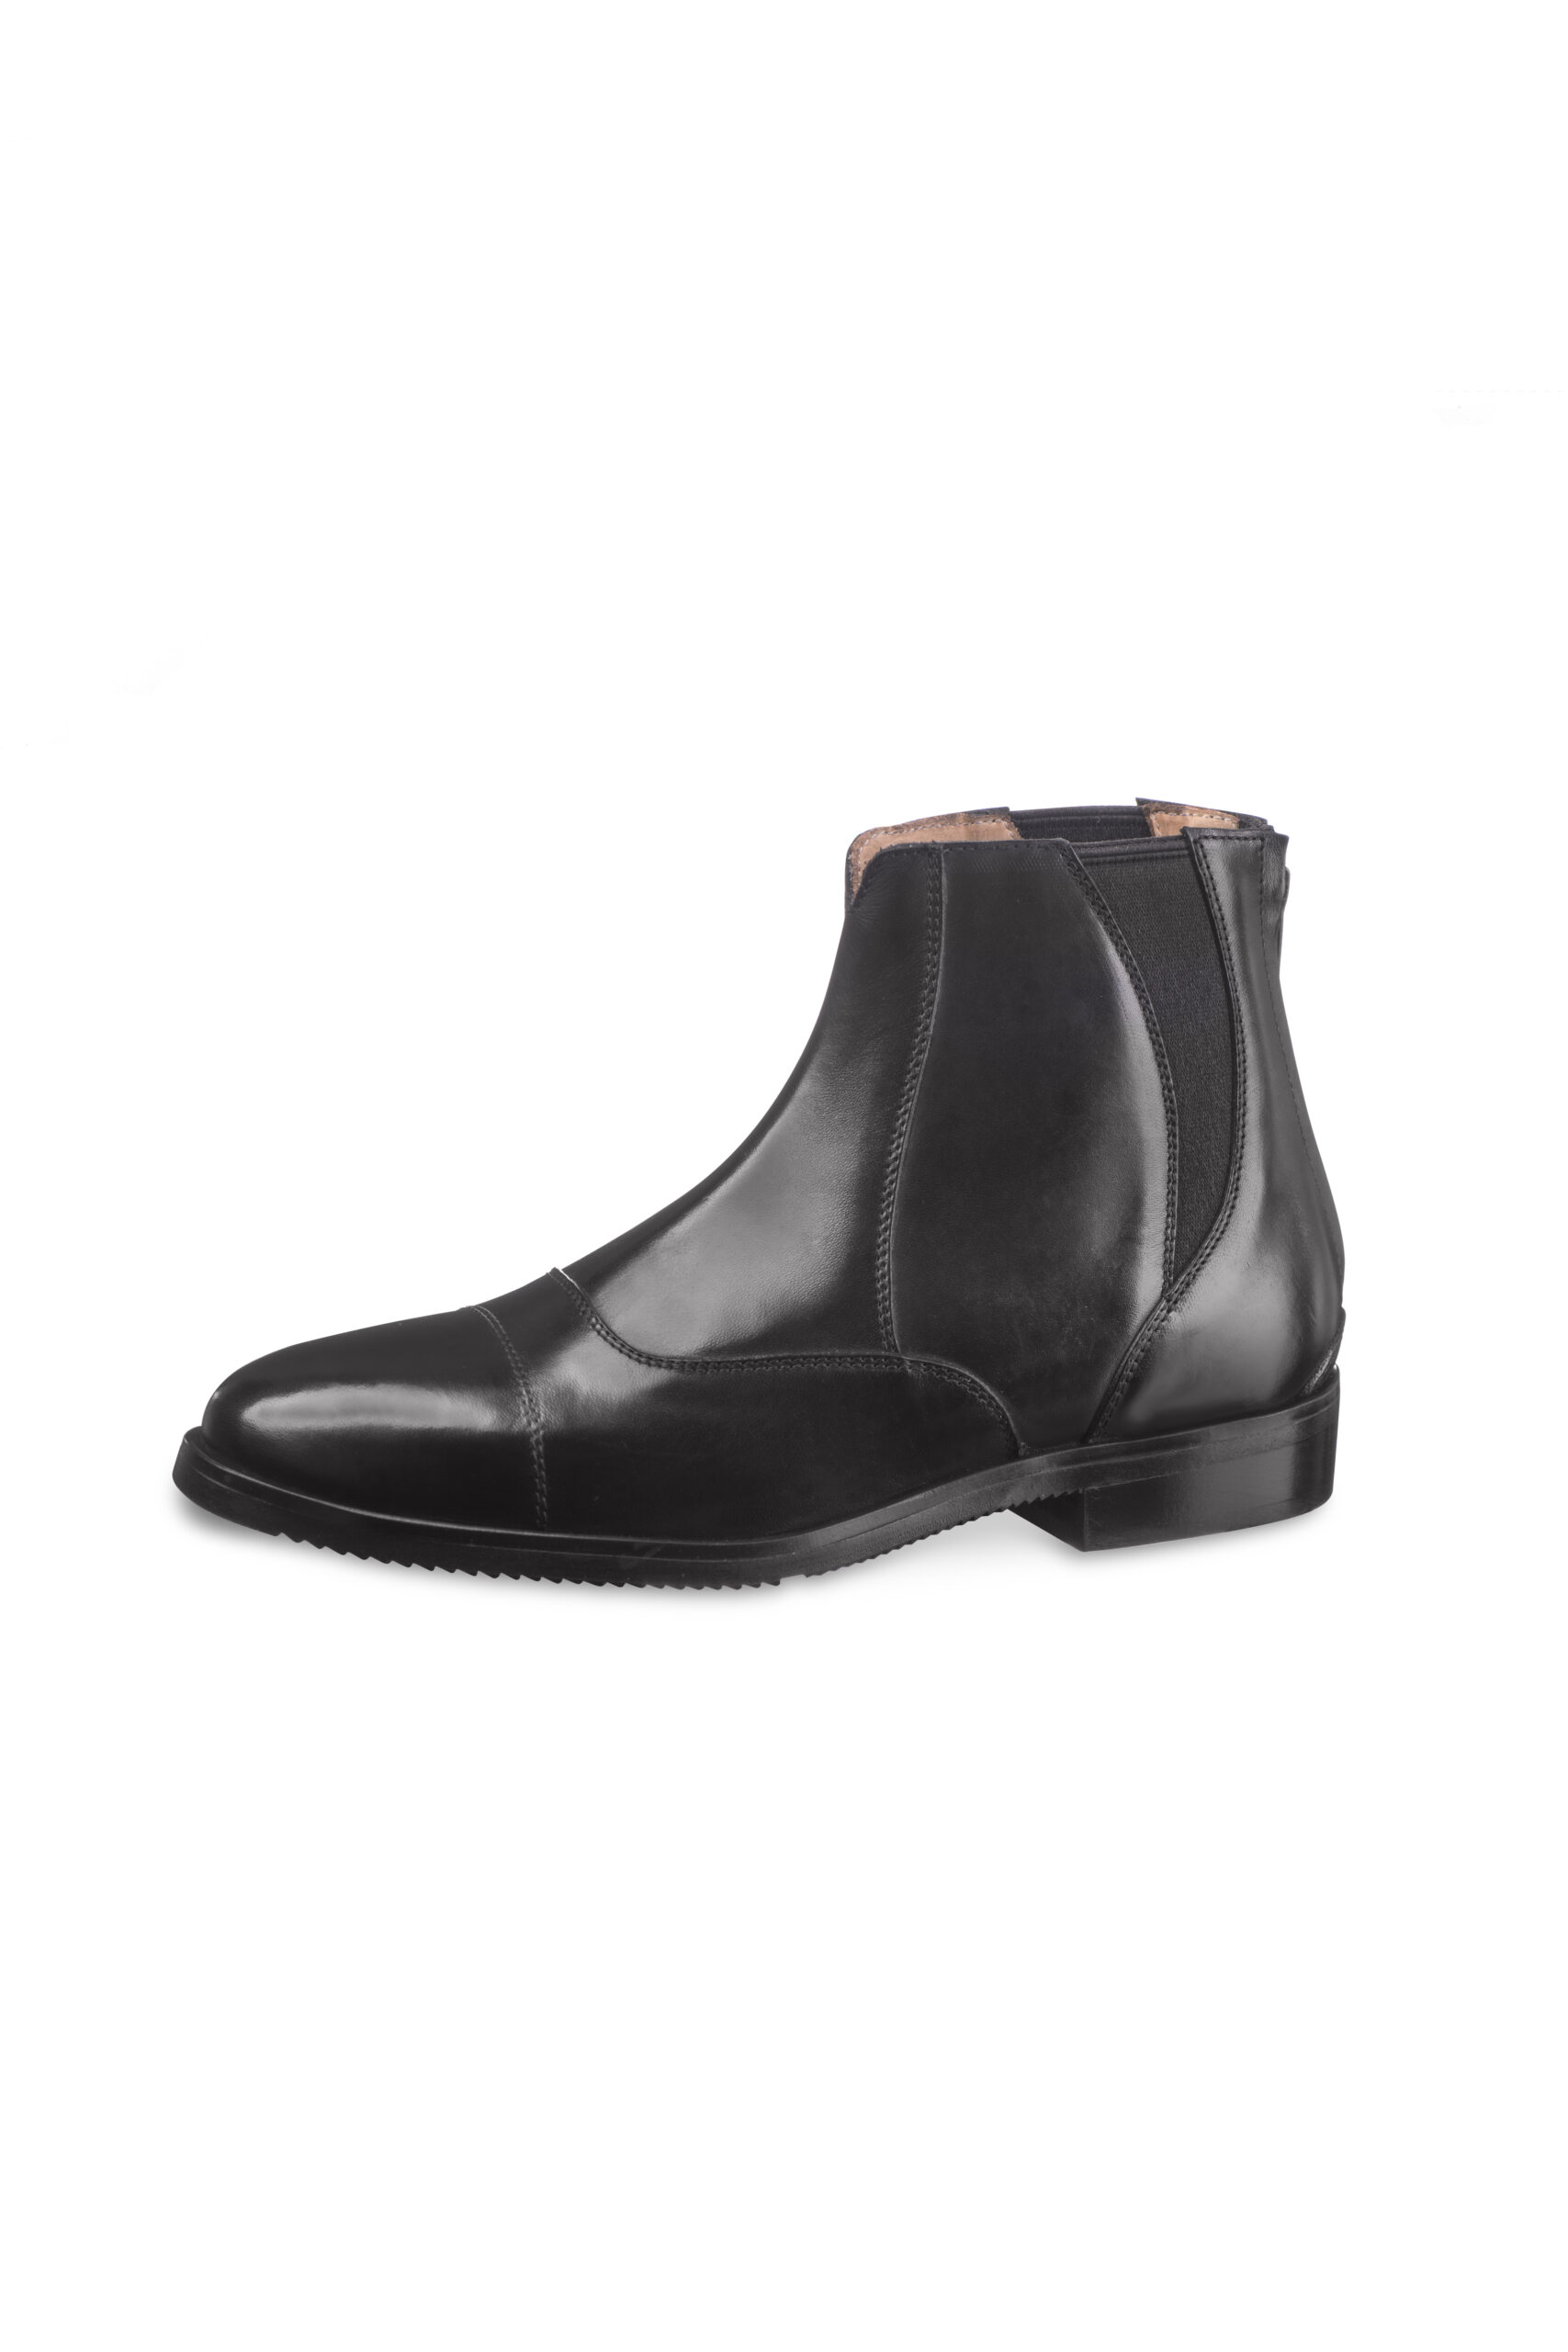 DSC_0086 Libra black short boot side